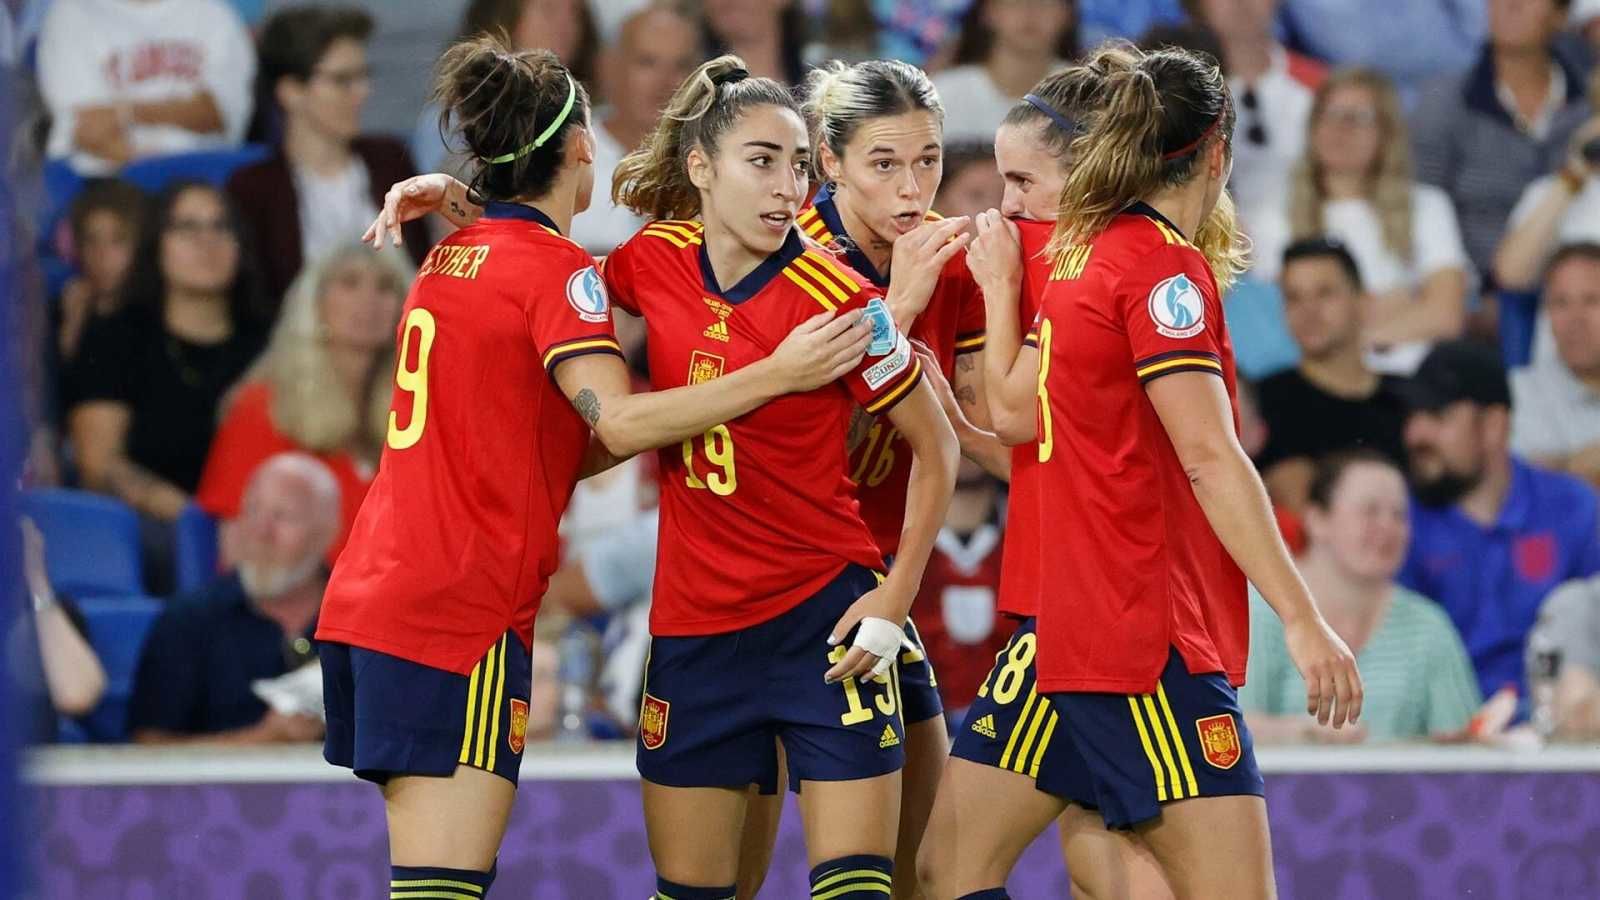 La mayoría de los españoles consideran que se deben mejorar las condiciones laborales de las futbolistas